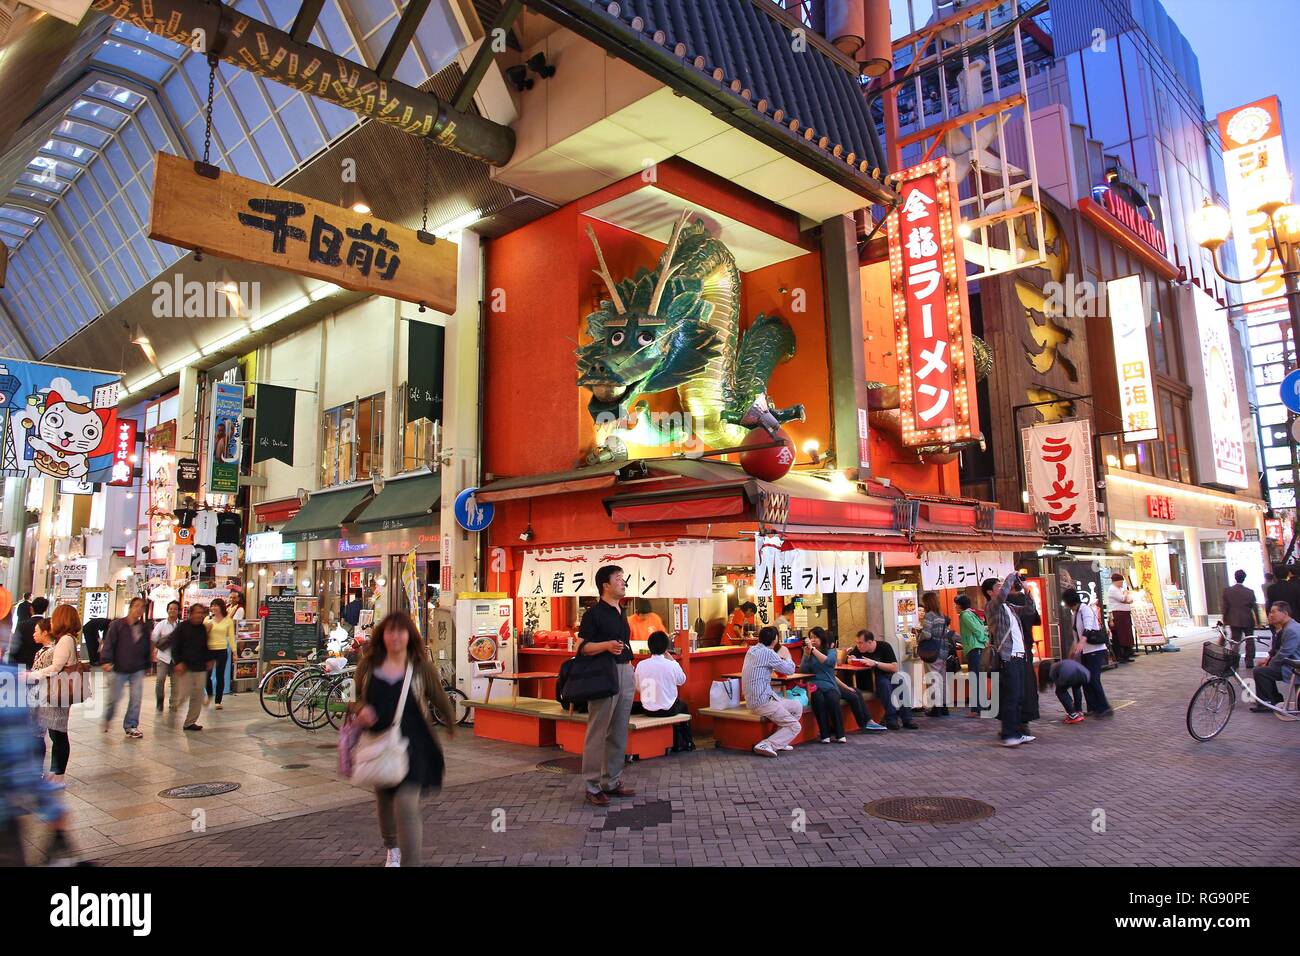 OSAKA, Giappone - 24 aprile: gli amanti dello shopping a piedi nei pressi di Shinsaibashi street on April 24, 2012 di Osaka in Giappone. Secondo Tripadvisor, è attualmente fra i top Foto Stock